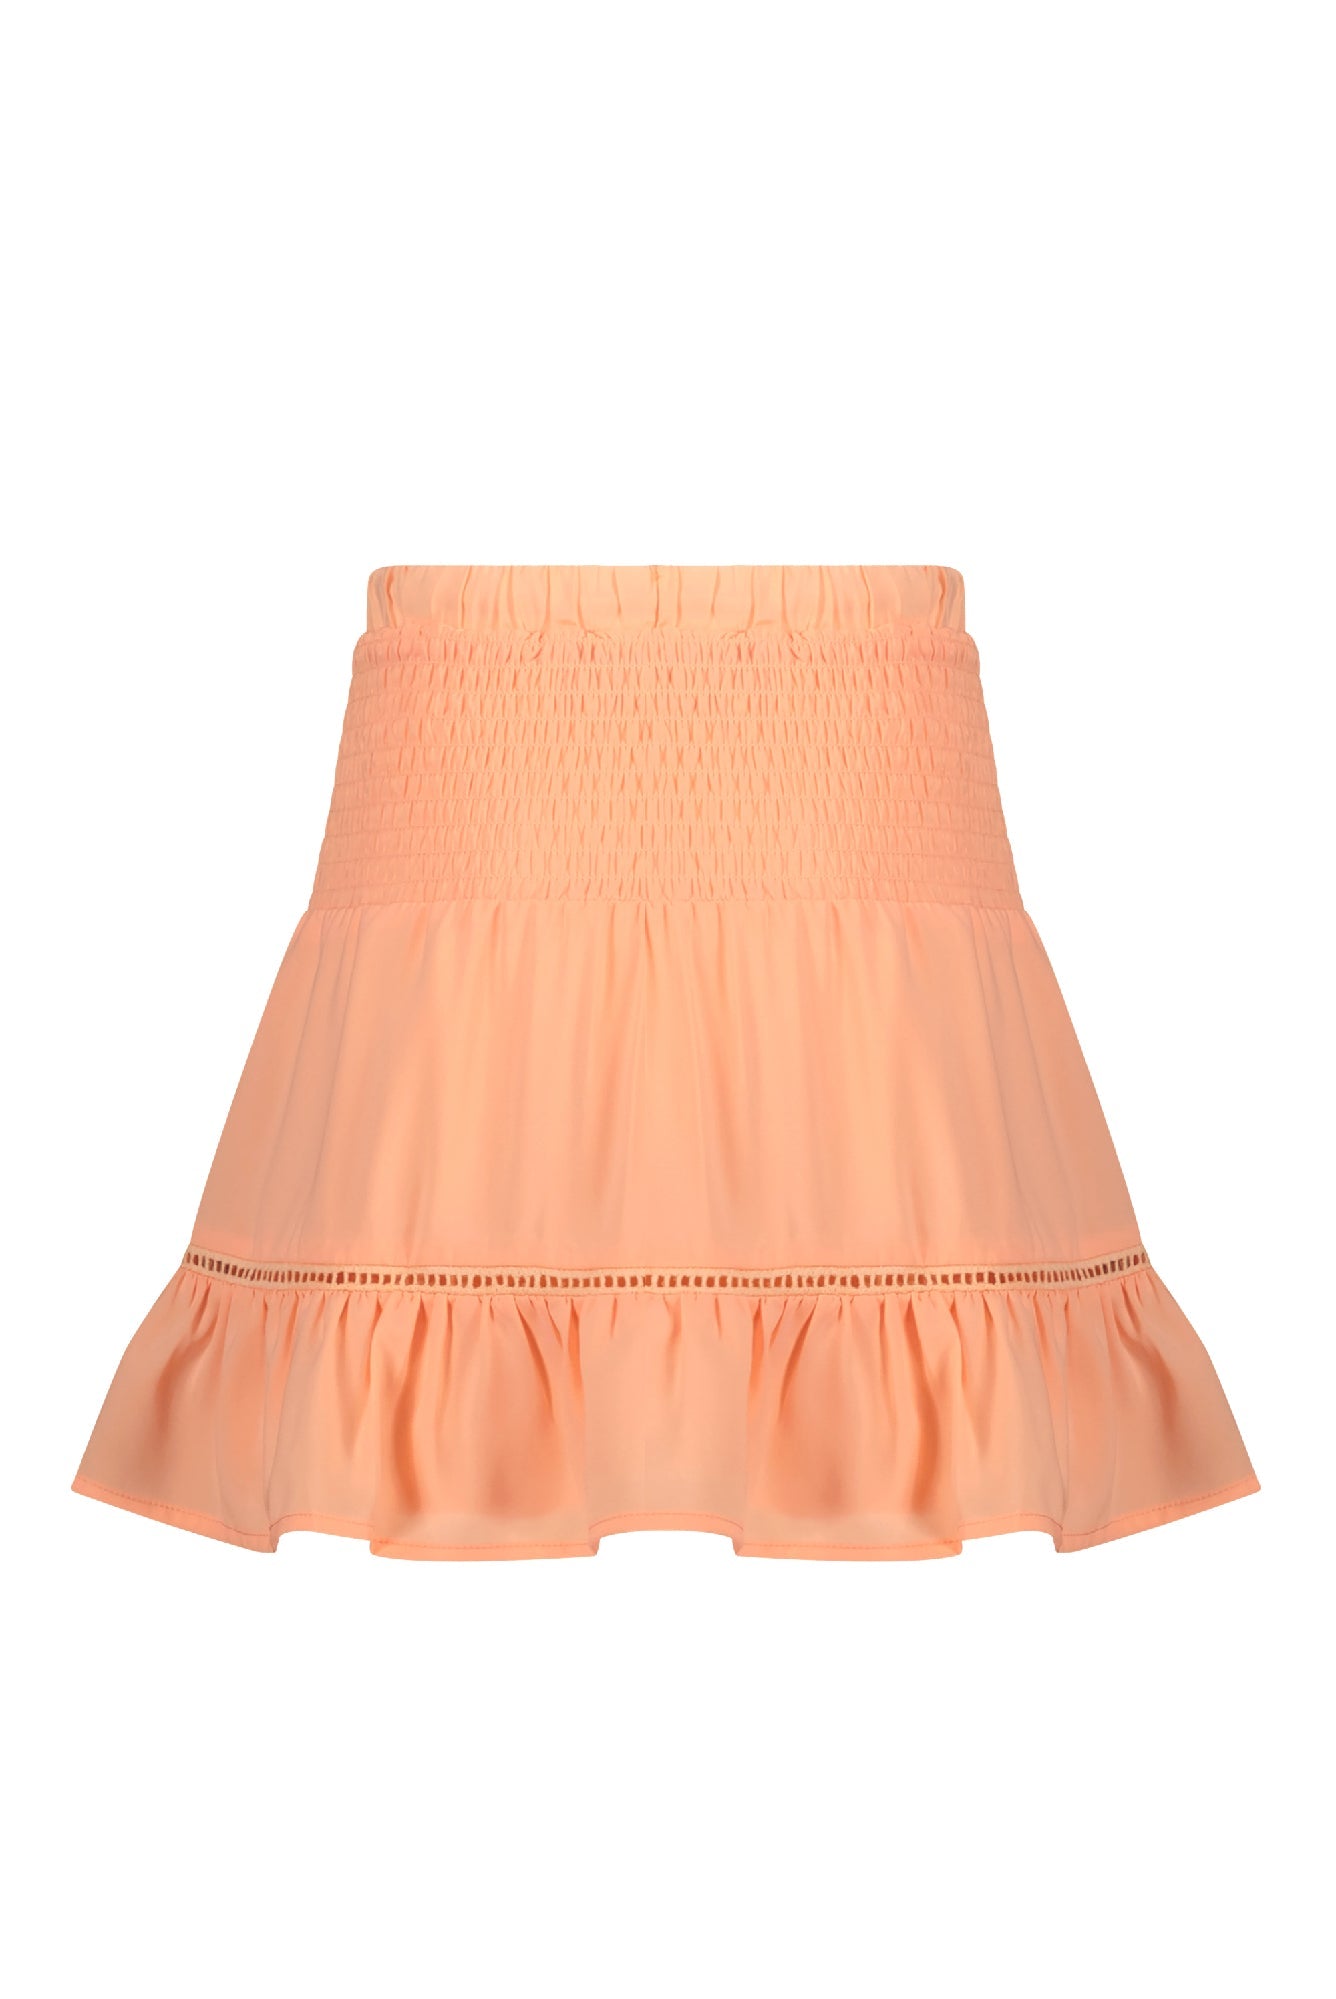 Meisjes Noor solid short skirt with smocked waistband van NoNo in de kleur Melon in maat 134-140.